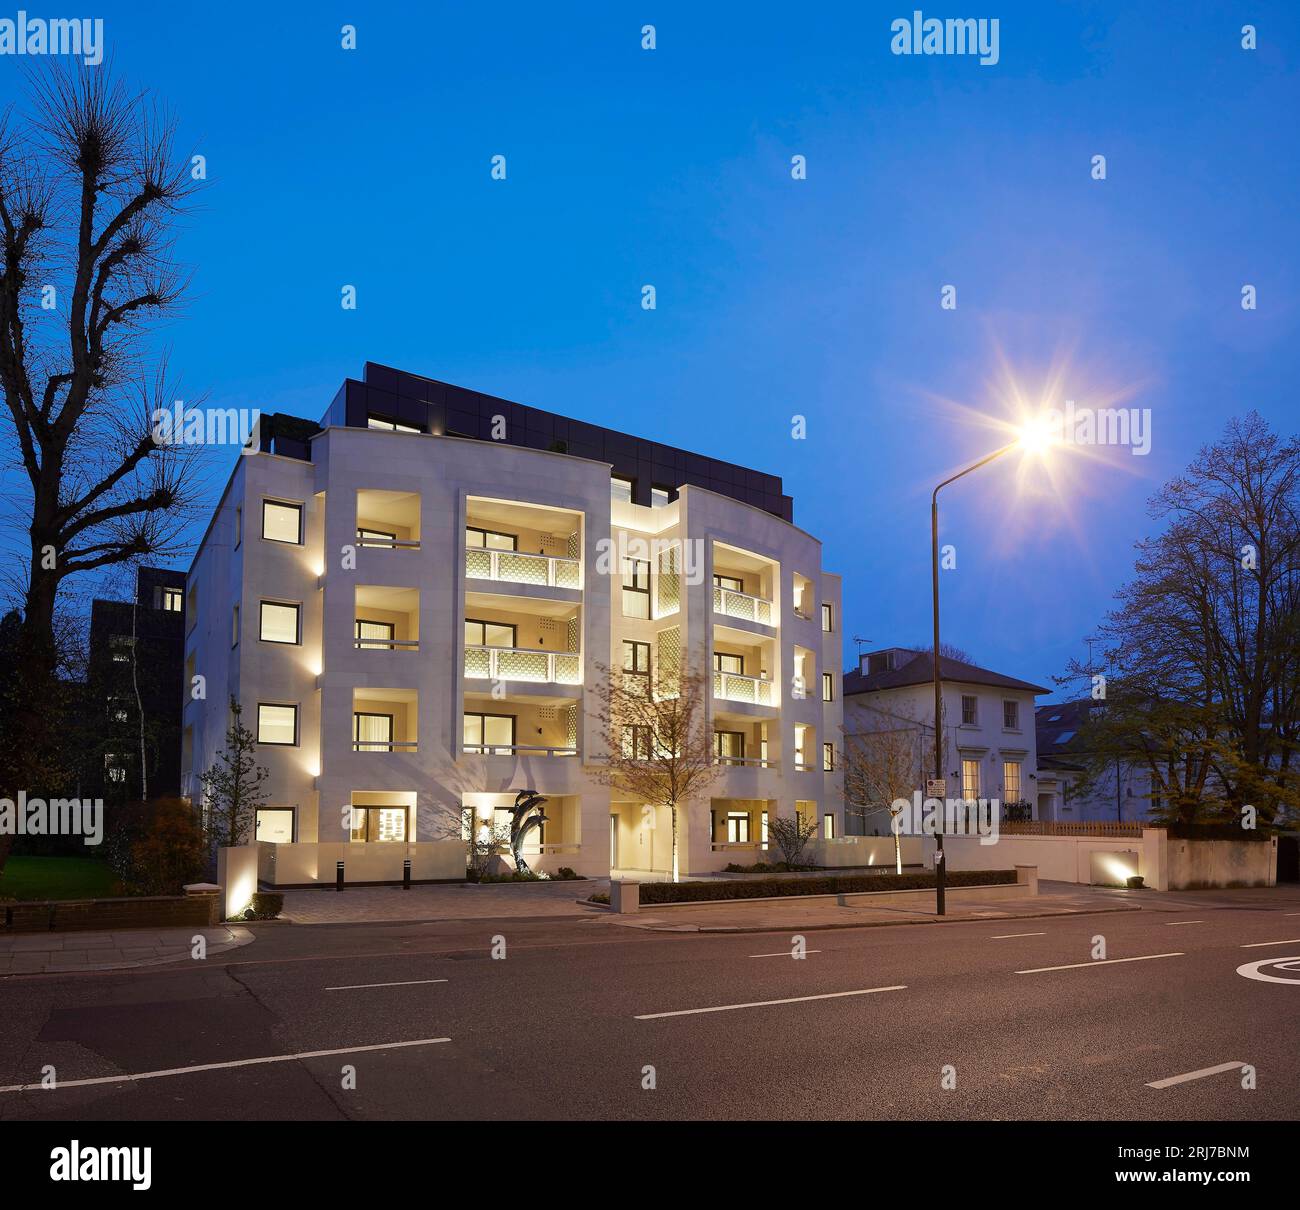 Vista notturna obliqua dall'altra parte della strada. Wellington Road, Londra, Regno Unito. Architetto: Alan Power Architects Ltd, 2022. Foto Stock